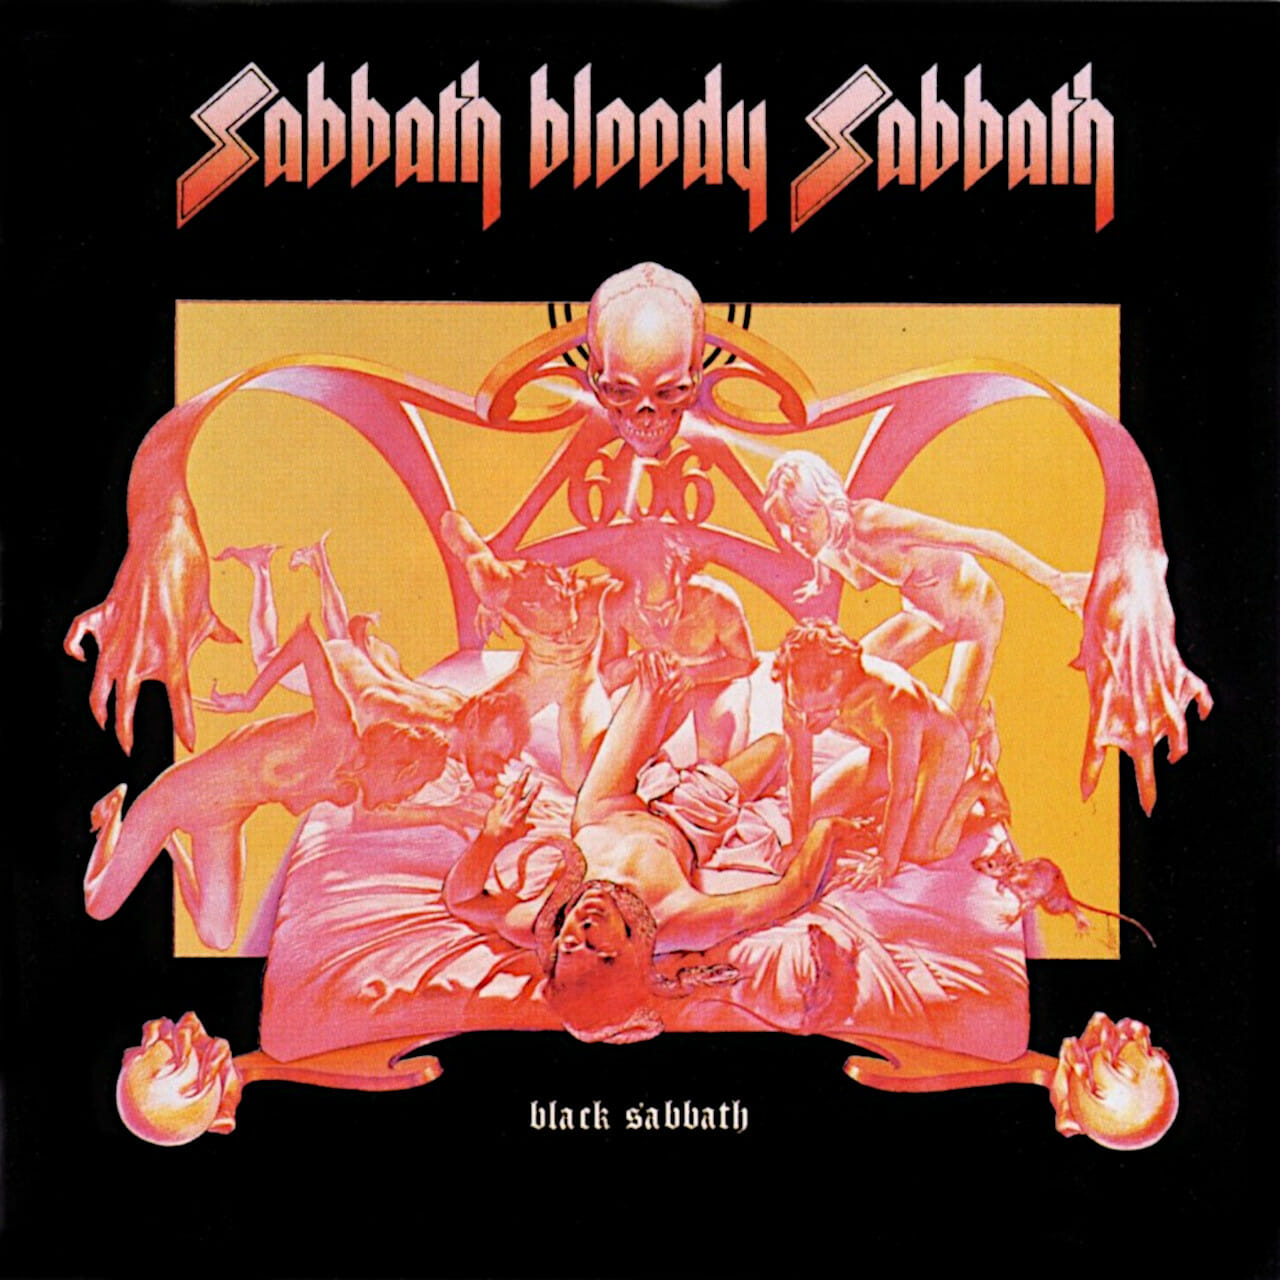 Black Sabbath - Blodig sabbat